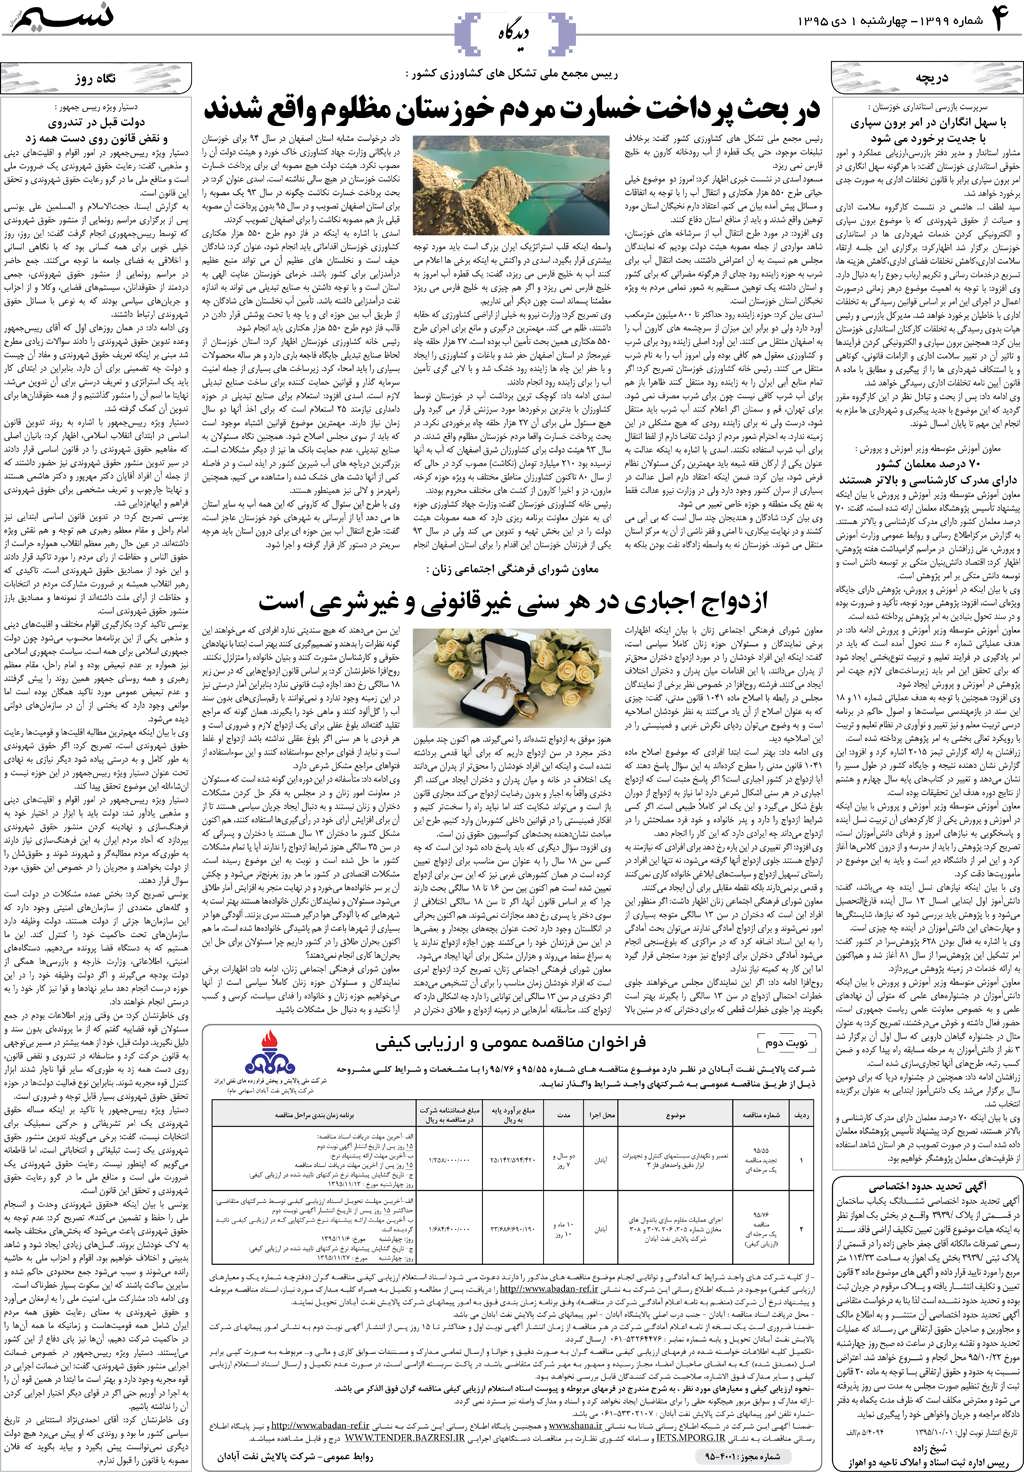 صفحه دیدگاه روزنامه نسیم شماره 1399